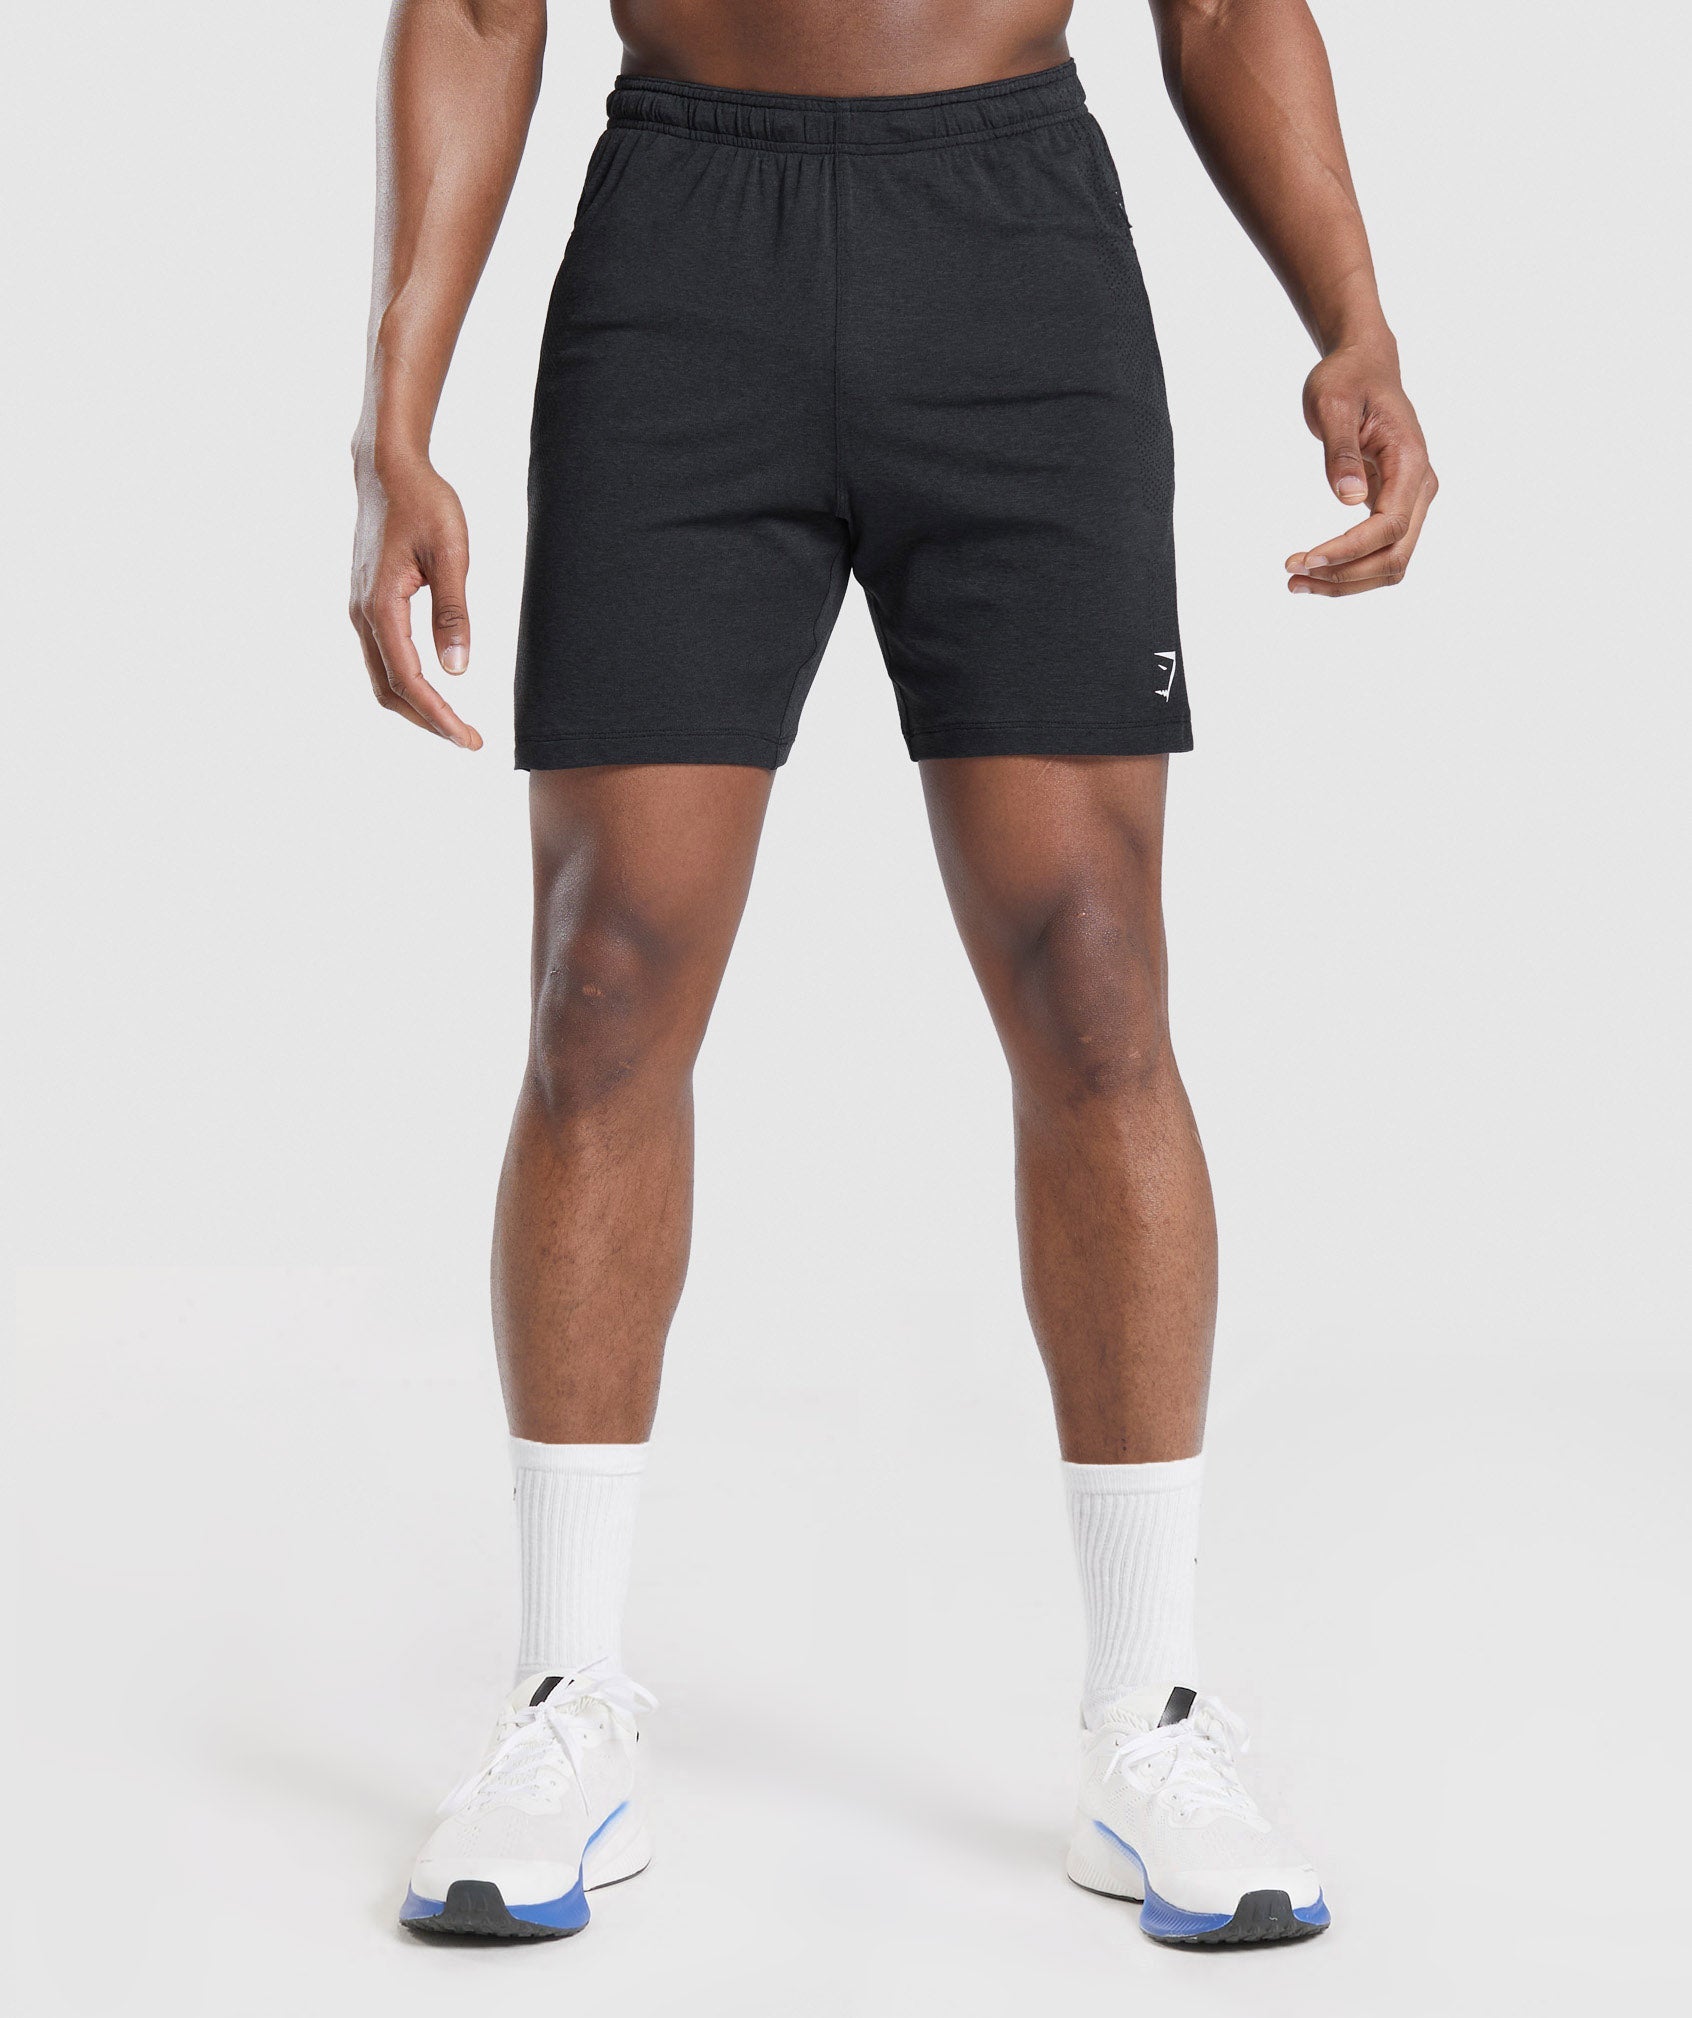 Buy Mens Gymshark Short Sleeve South Africa - Black Vital Light seamless